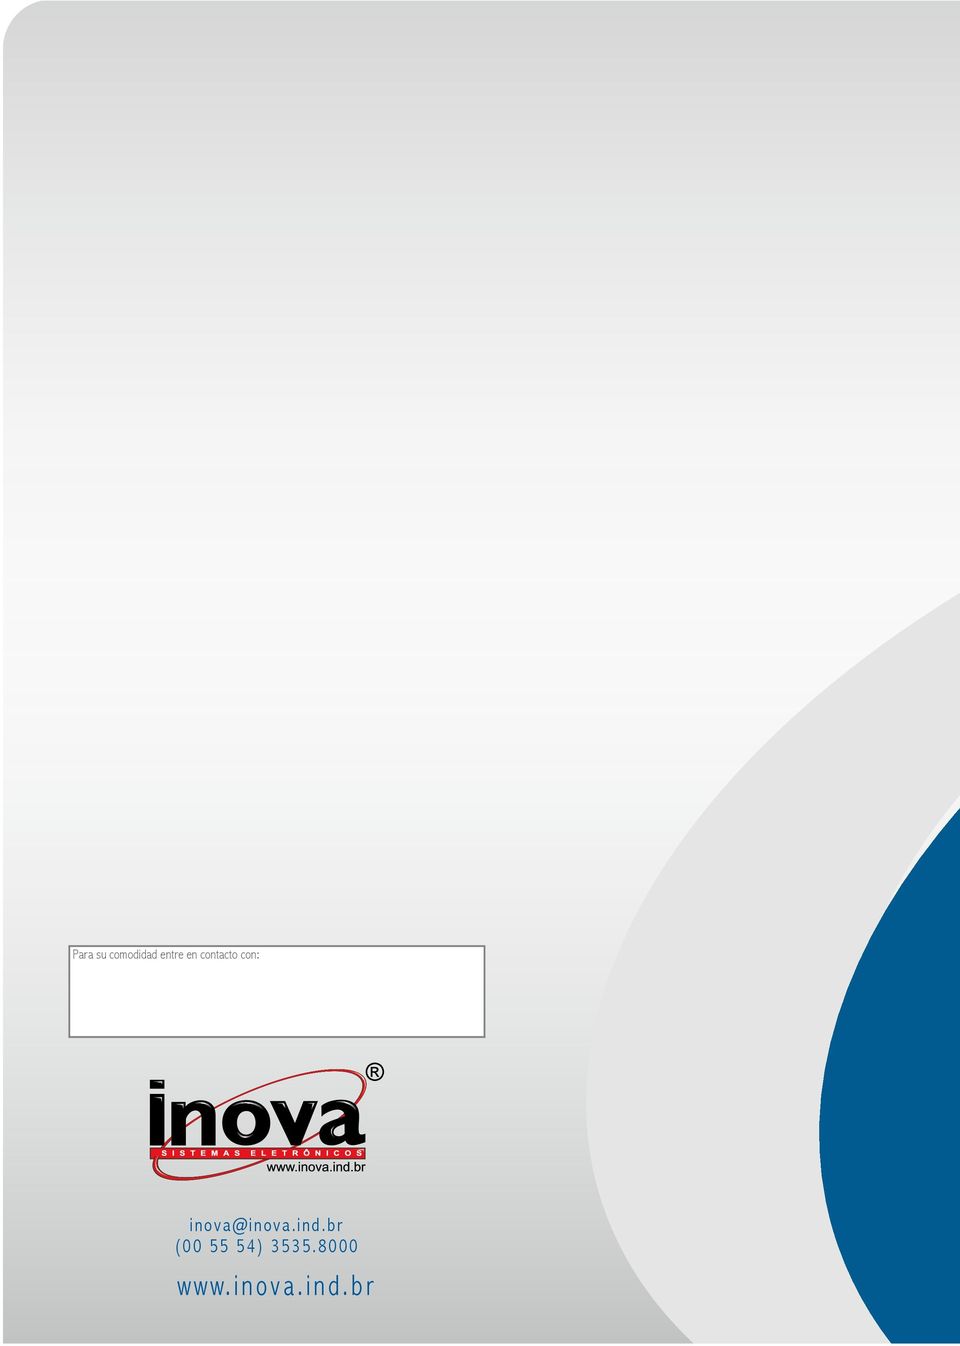 inova@inova.ind.